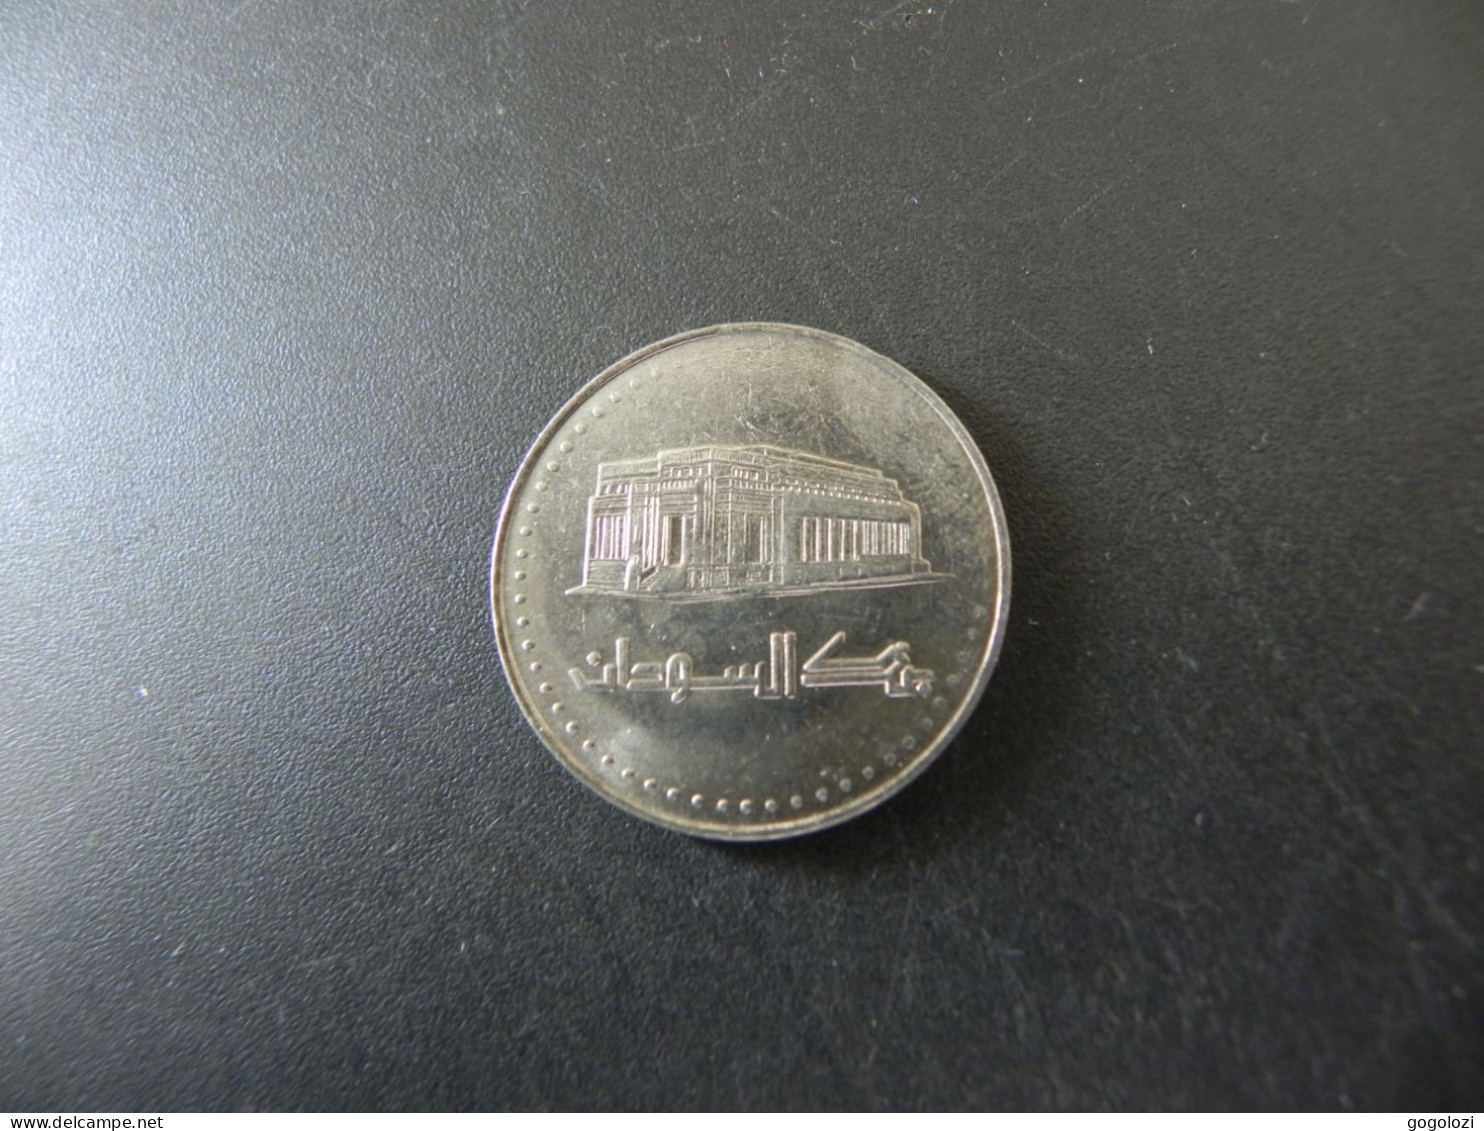 Sudan 50 Dinars 2002 - Soedan